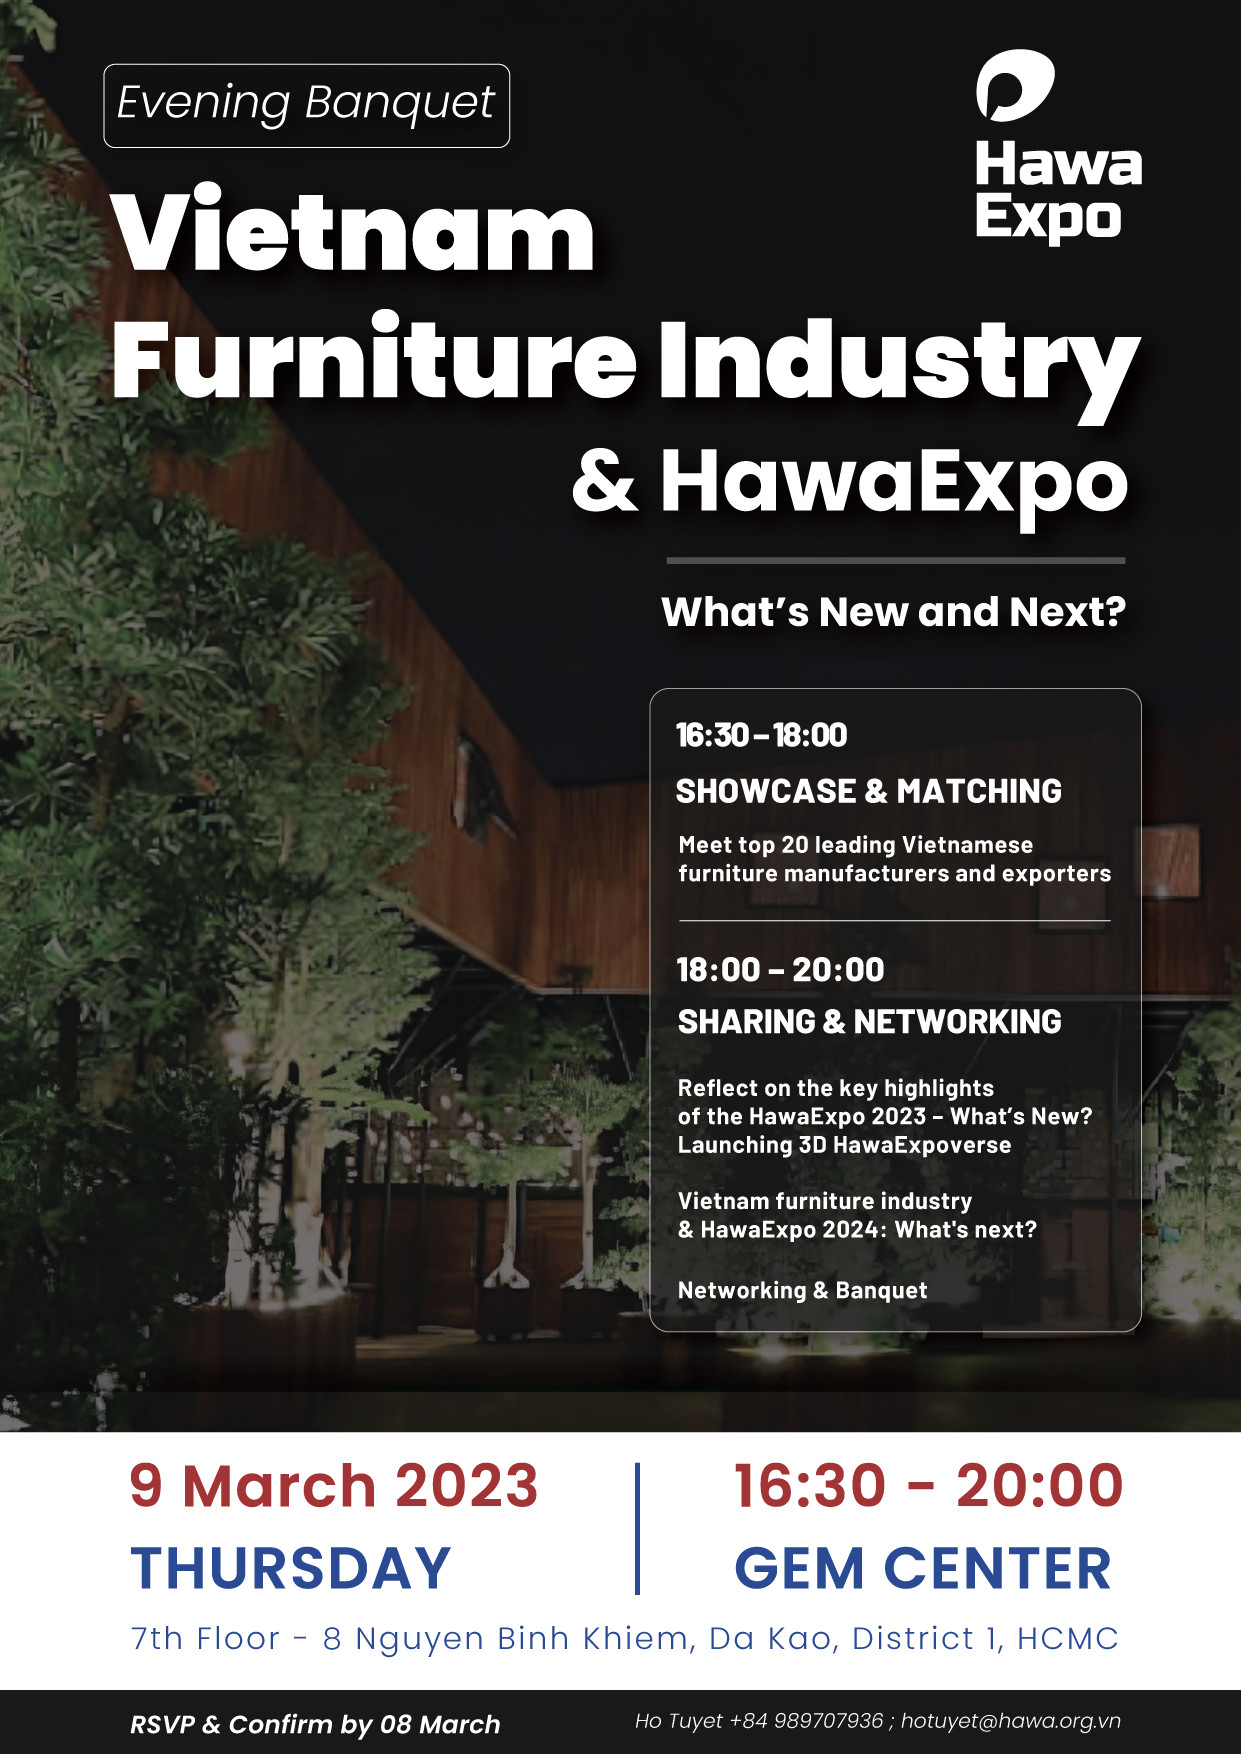 Vietnam Furniture Industry & HawaExpo